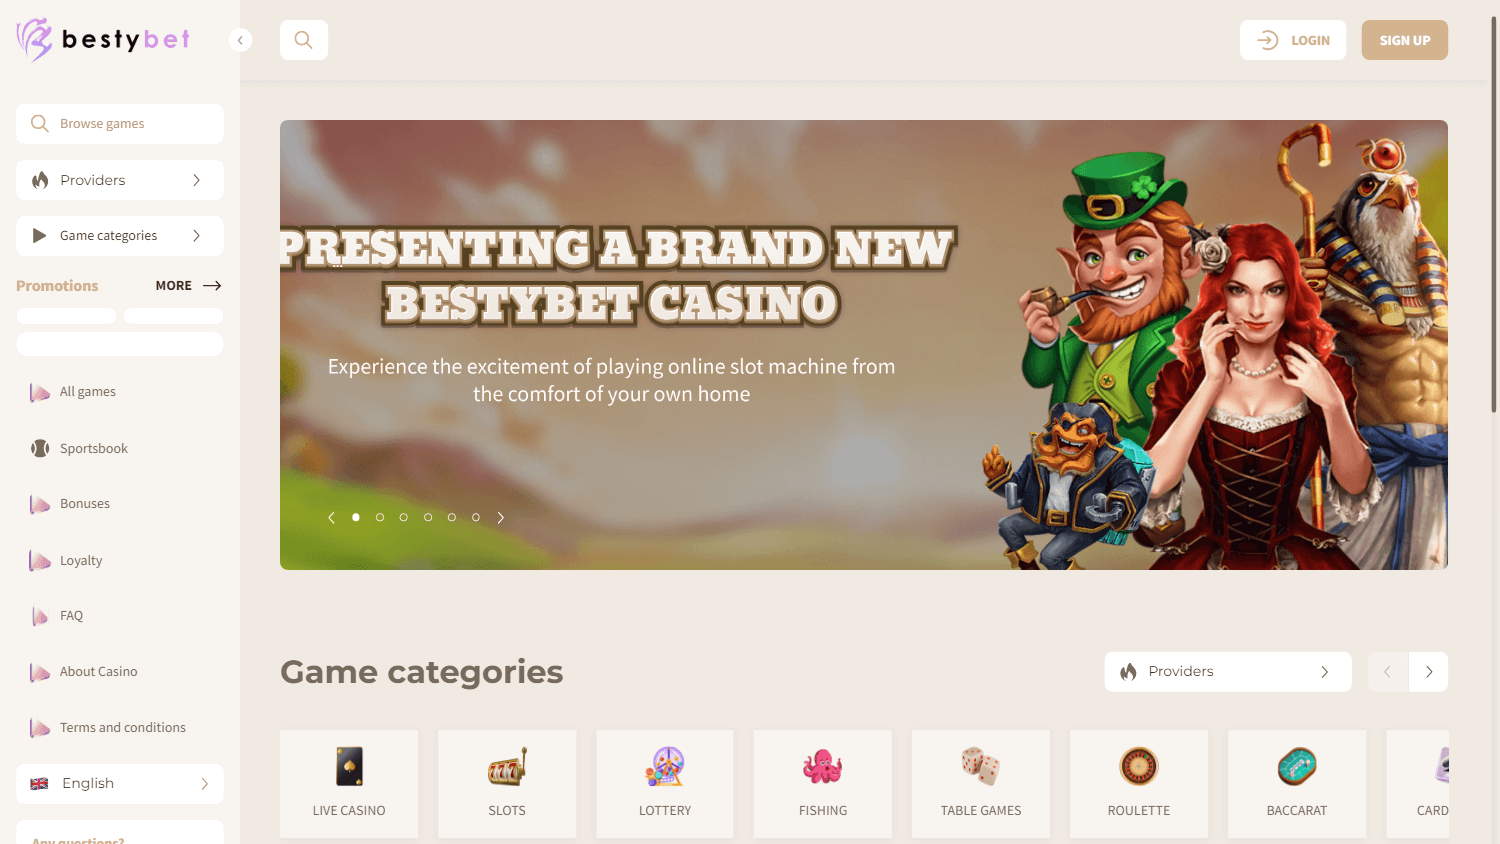 bestybet_casino_homepage_desktop